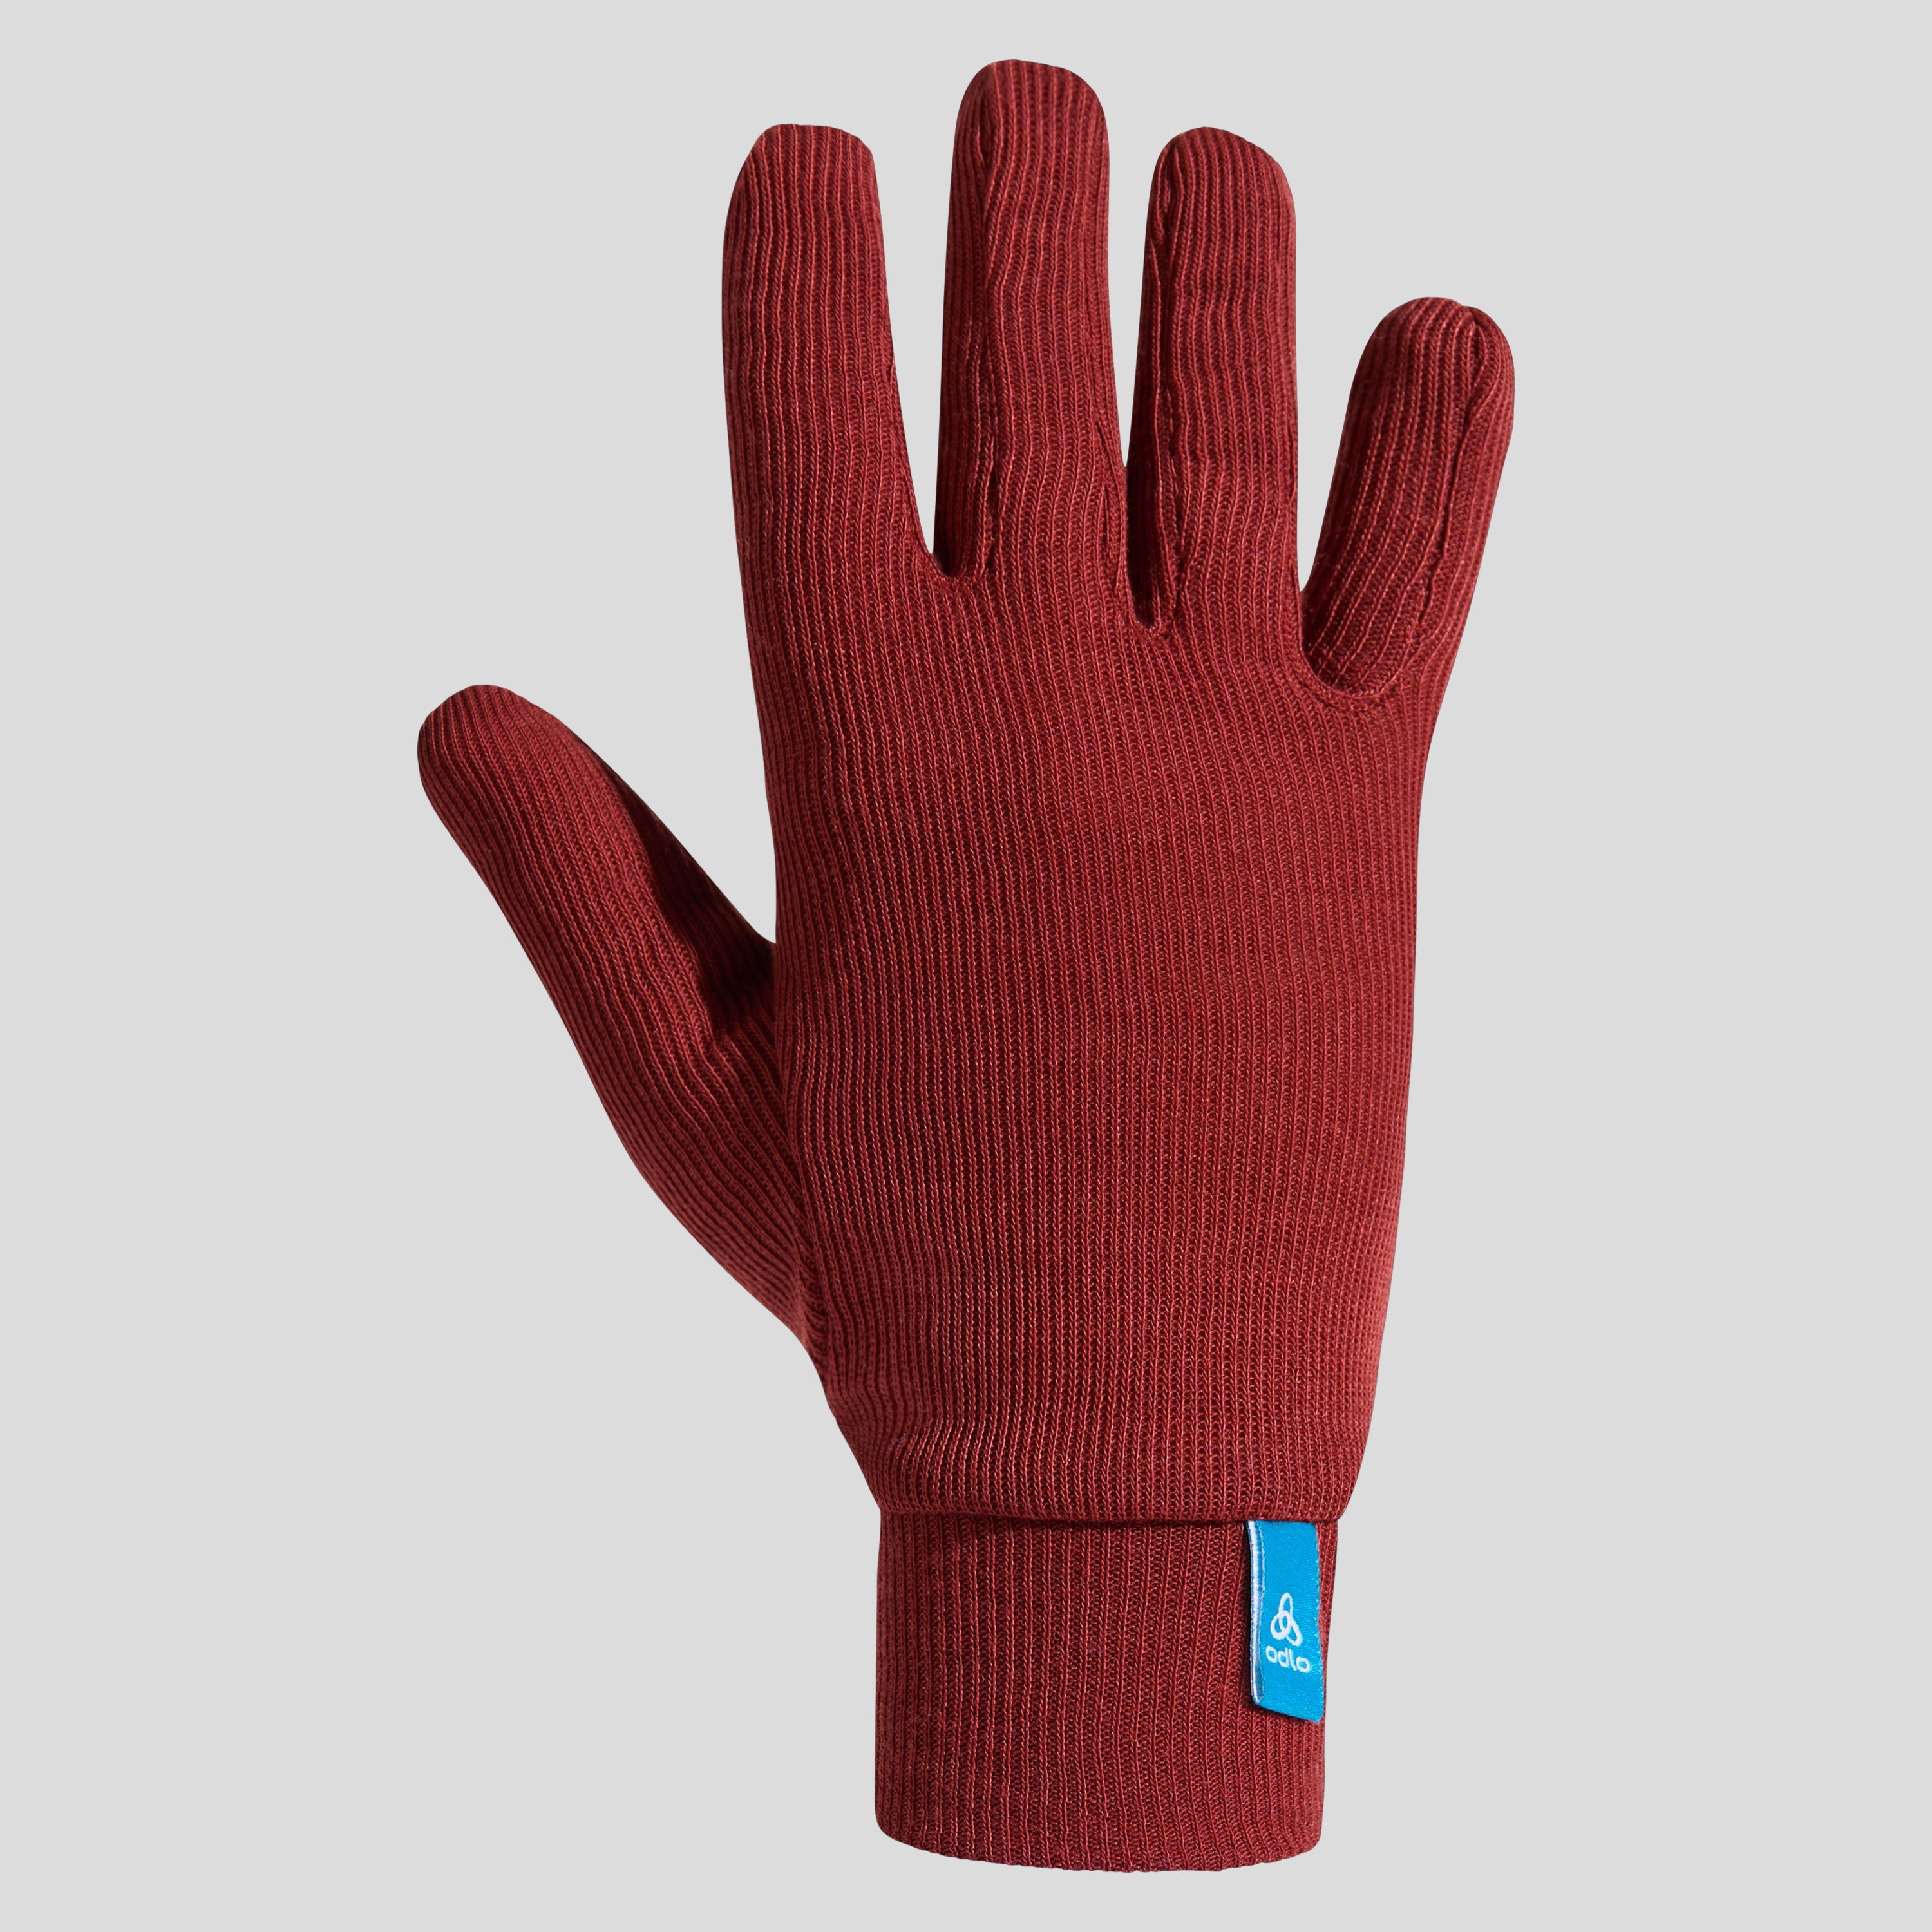 ODLO Active Warm Handschuhe für Kinder, L, rot